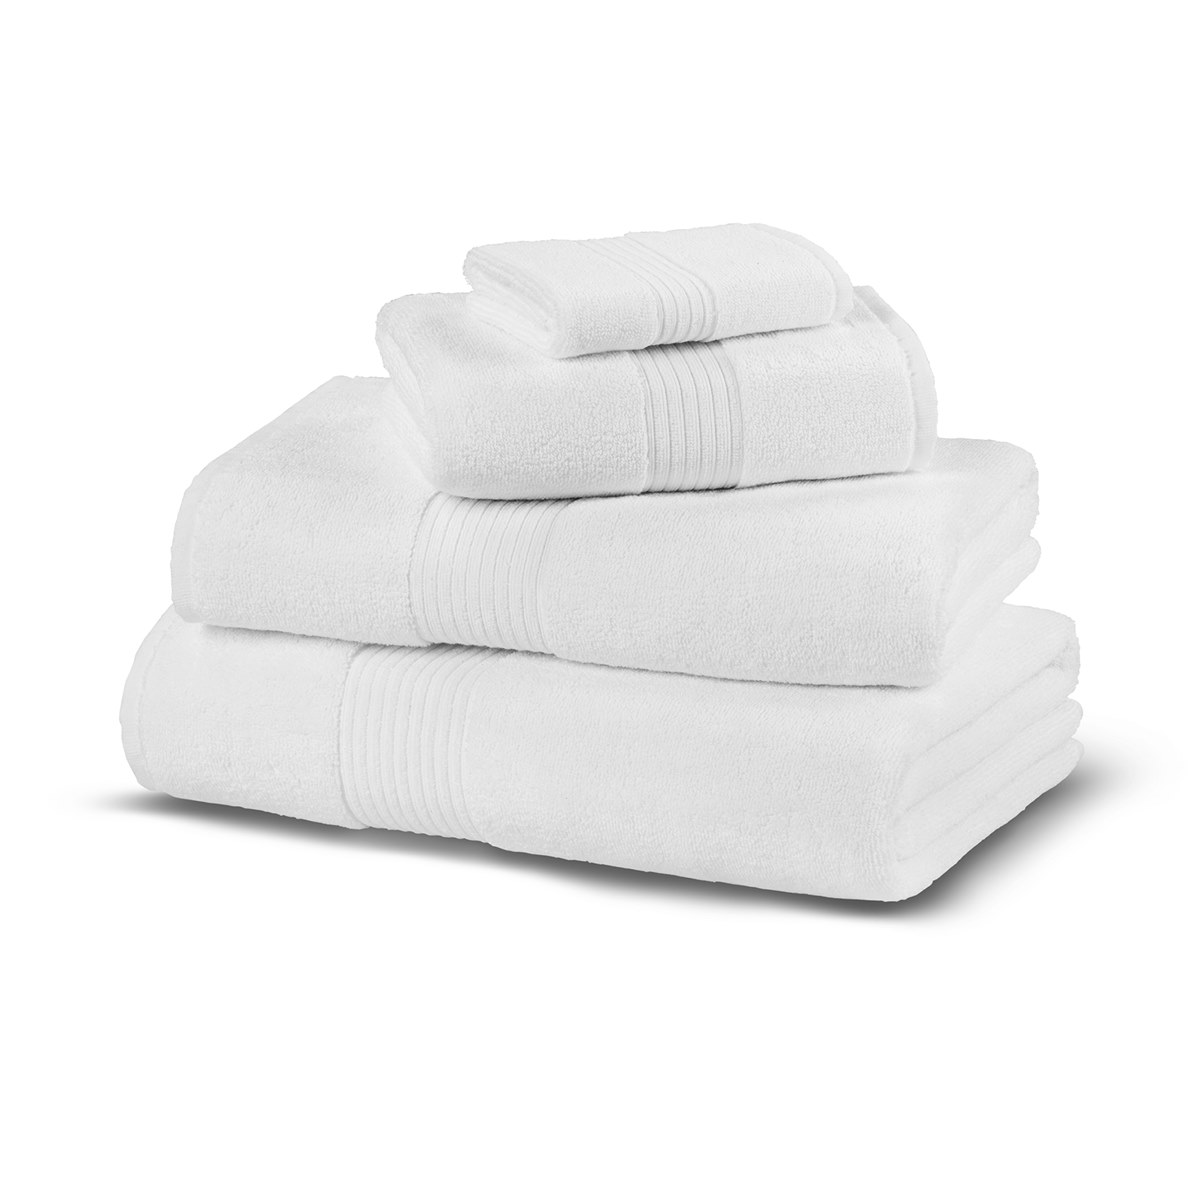 Полотенца краснодар. Полотенце Spa махровое 100*150 Hamam. Белое полотенце. Полотенце махровое белый. Полотенца махровые белые для гостиниц.